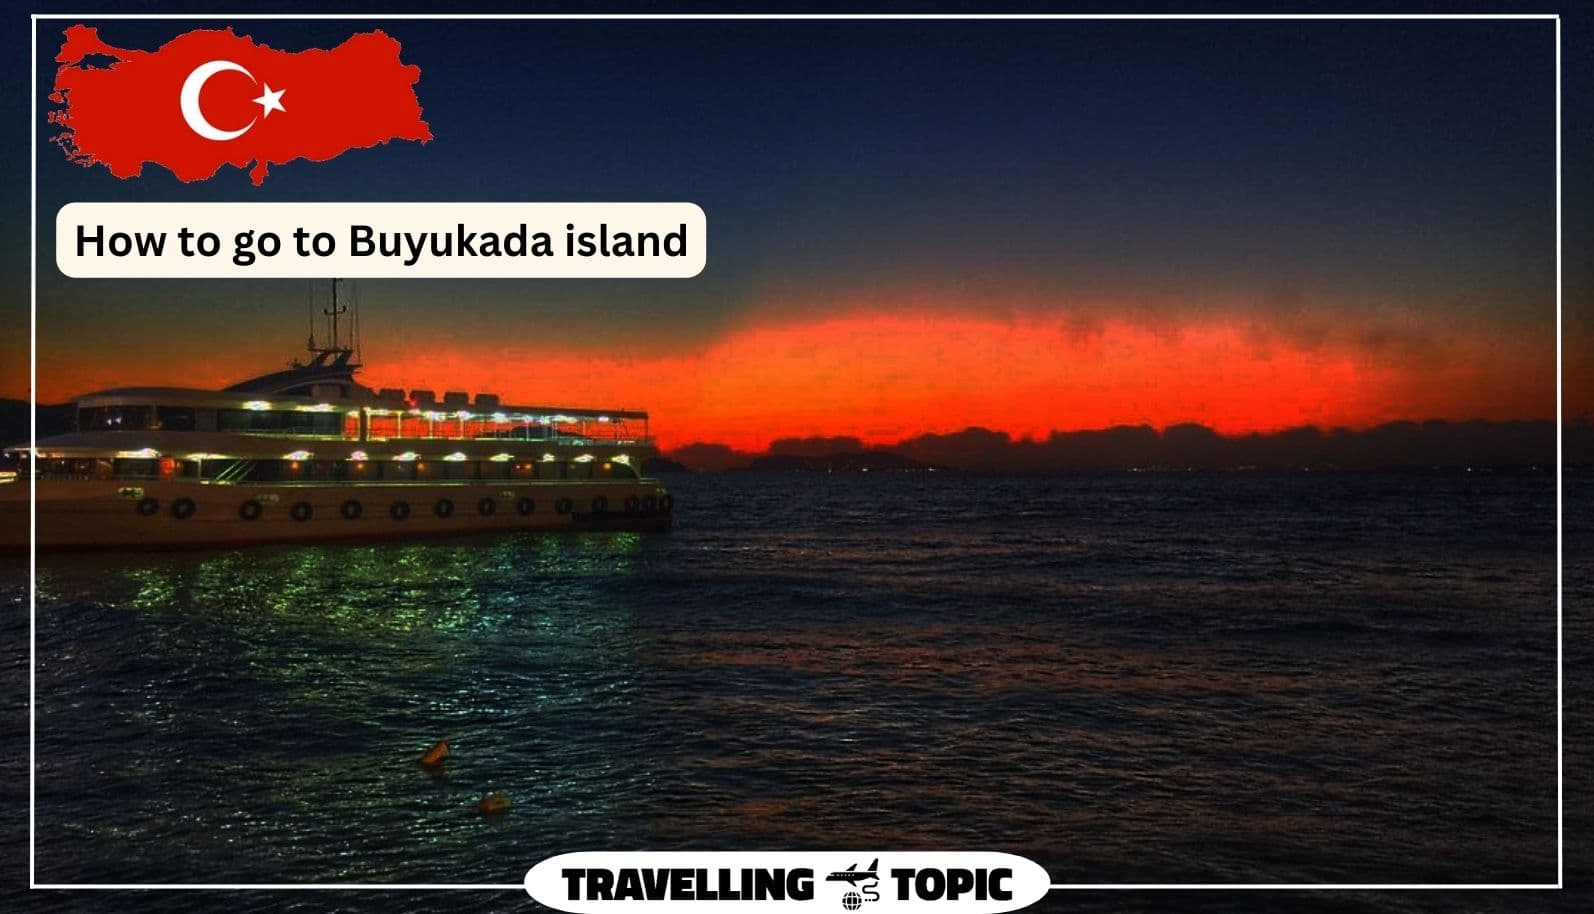 How to go to Buyukada island